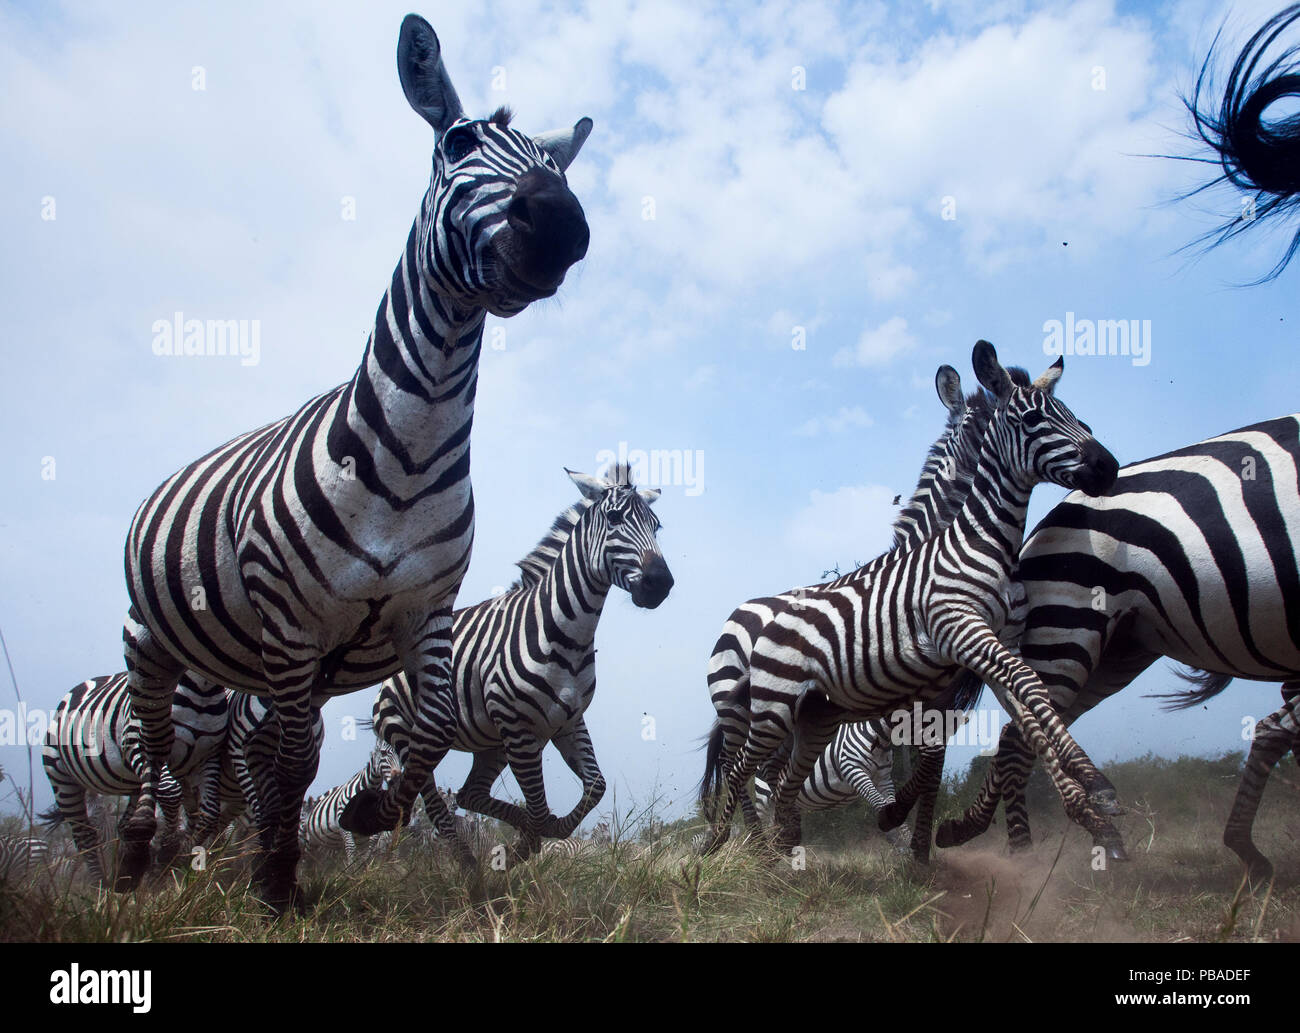 Gemeinsame oder Ebenen Zebra (Equus quagga burchellii) Herde auf dem verschieben, Weitwinkel Perspektive mit einer entfernten Kamera genommen. Masai Mara National Reserve, Kenia. Stockfoto